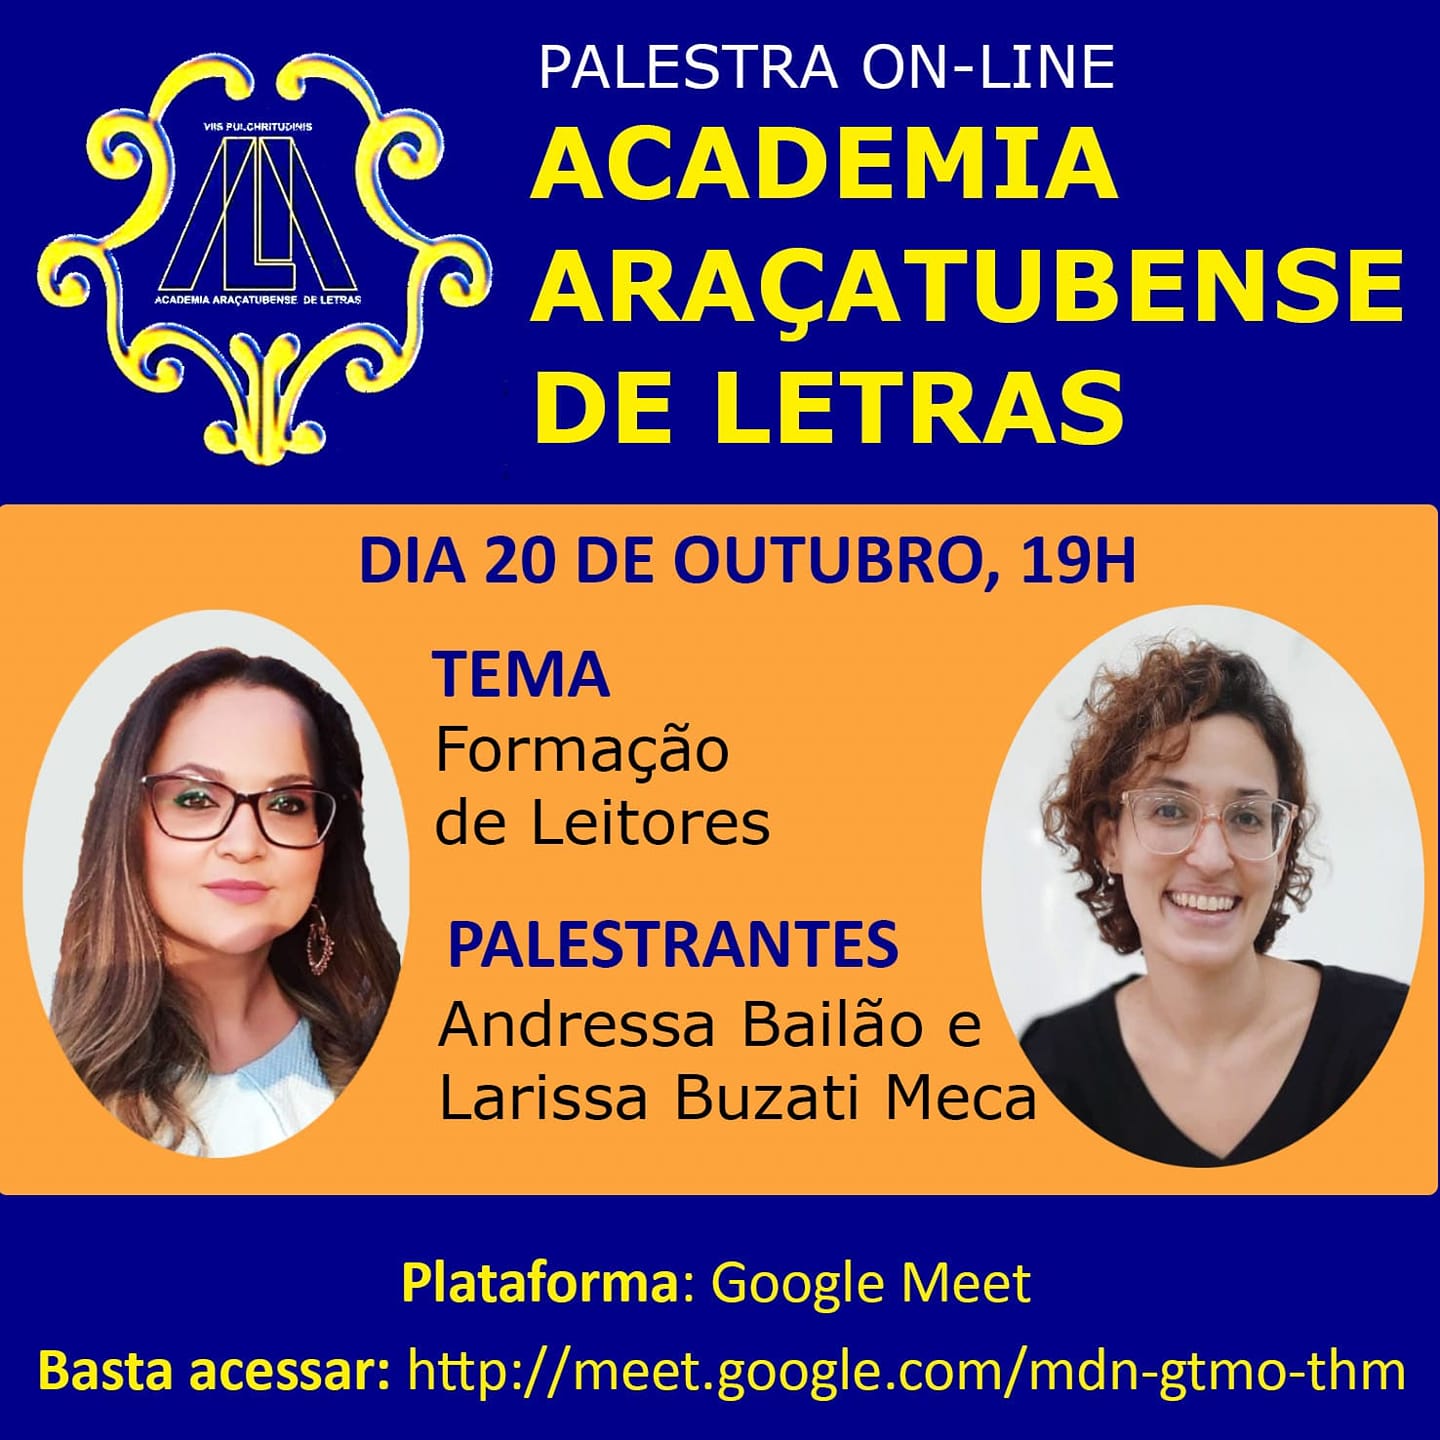 Adressa Bailão e Larissa Buzati Meca falam sobre ‘Formação de Leitores’ em palestra online e gratuita da AAL